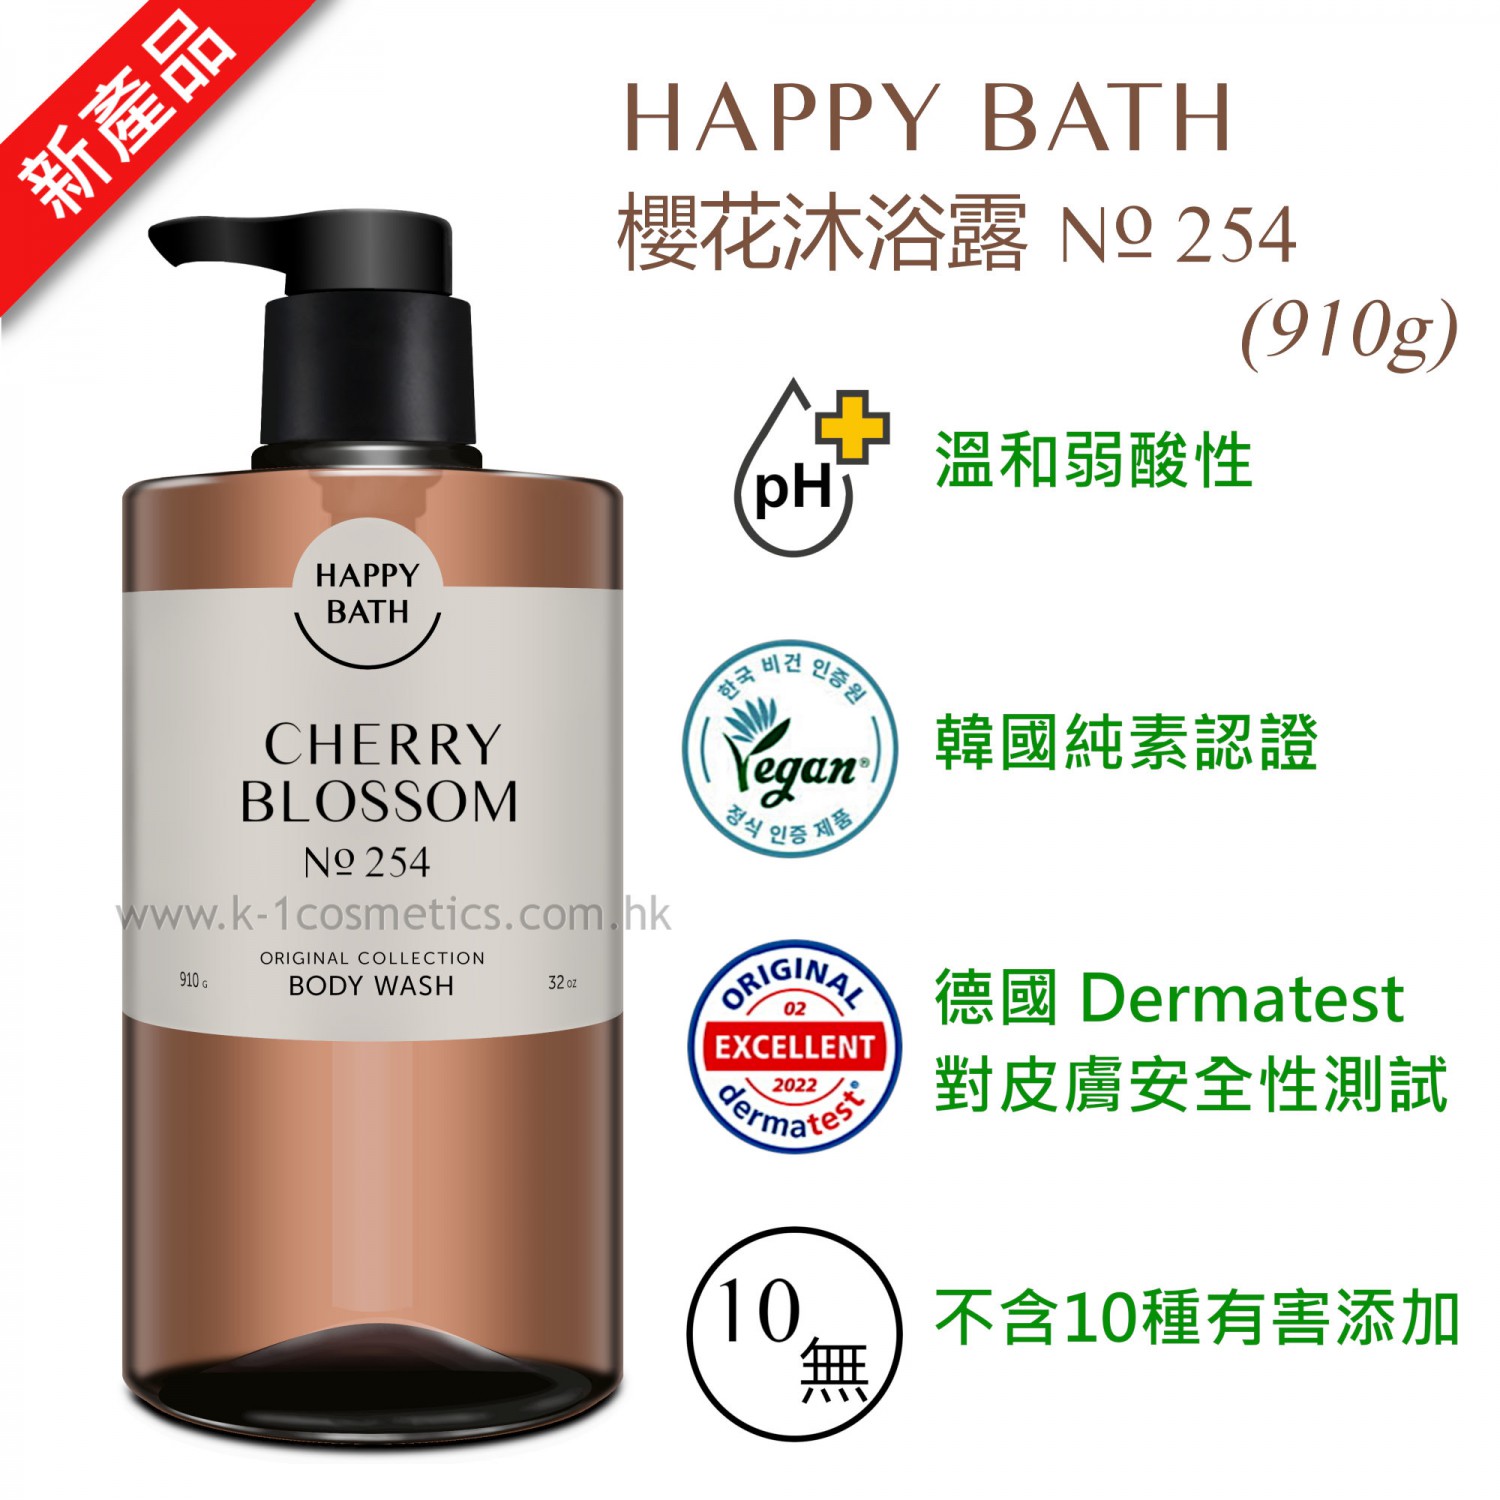 Happy Bath 櫻花沐浴露 No. 254 (910g)